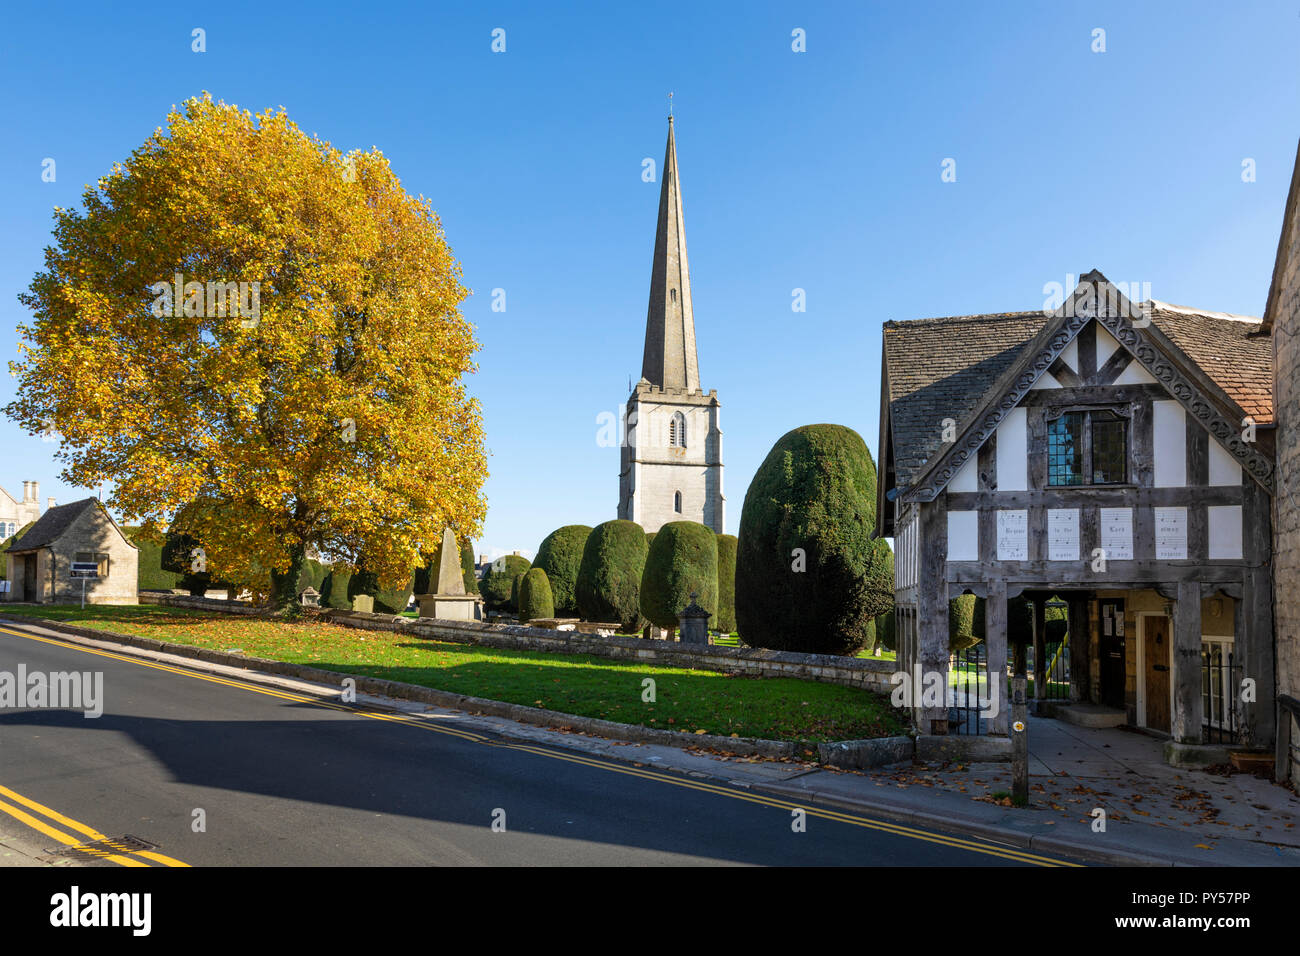 Painswick St Mary's chiesa parrocchiale e lychgate con colori autunnali albero nel pomeriggio di sole, Painswick, Cotswolds, Gloucestershire, England, Regno Unito Foto Stock